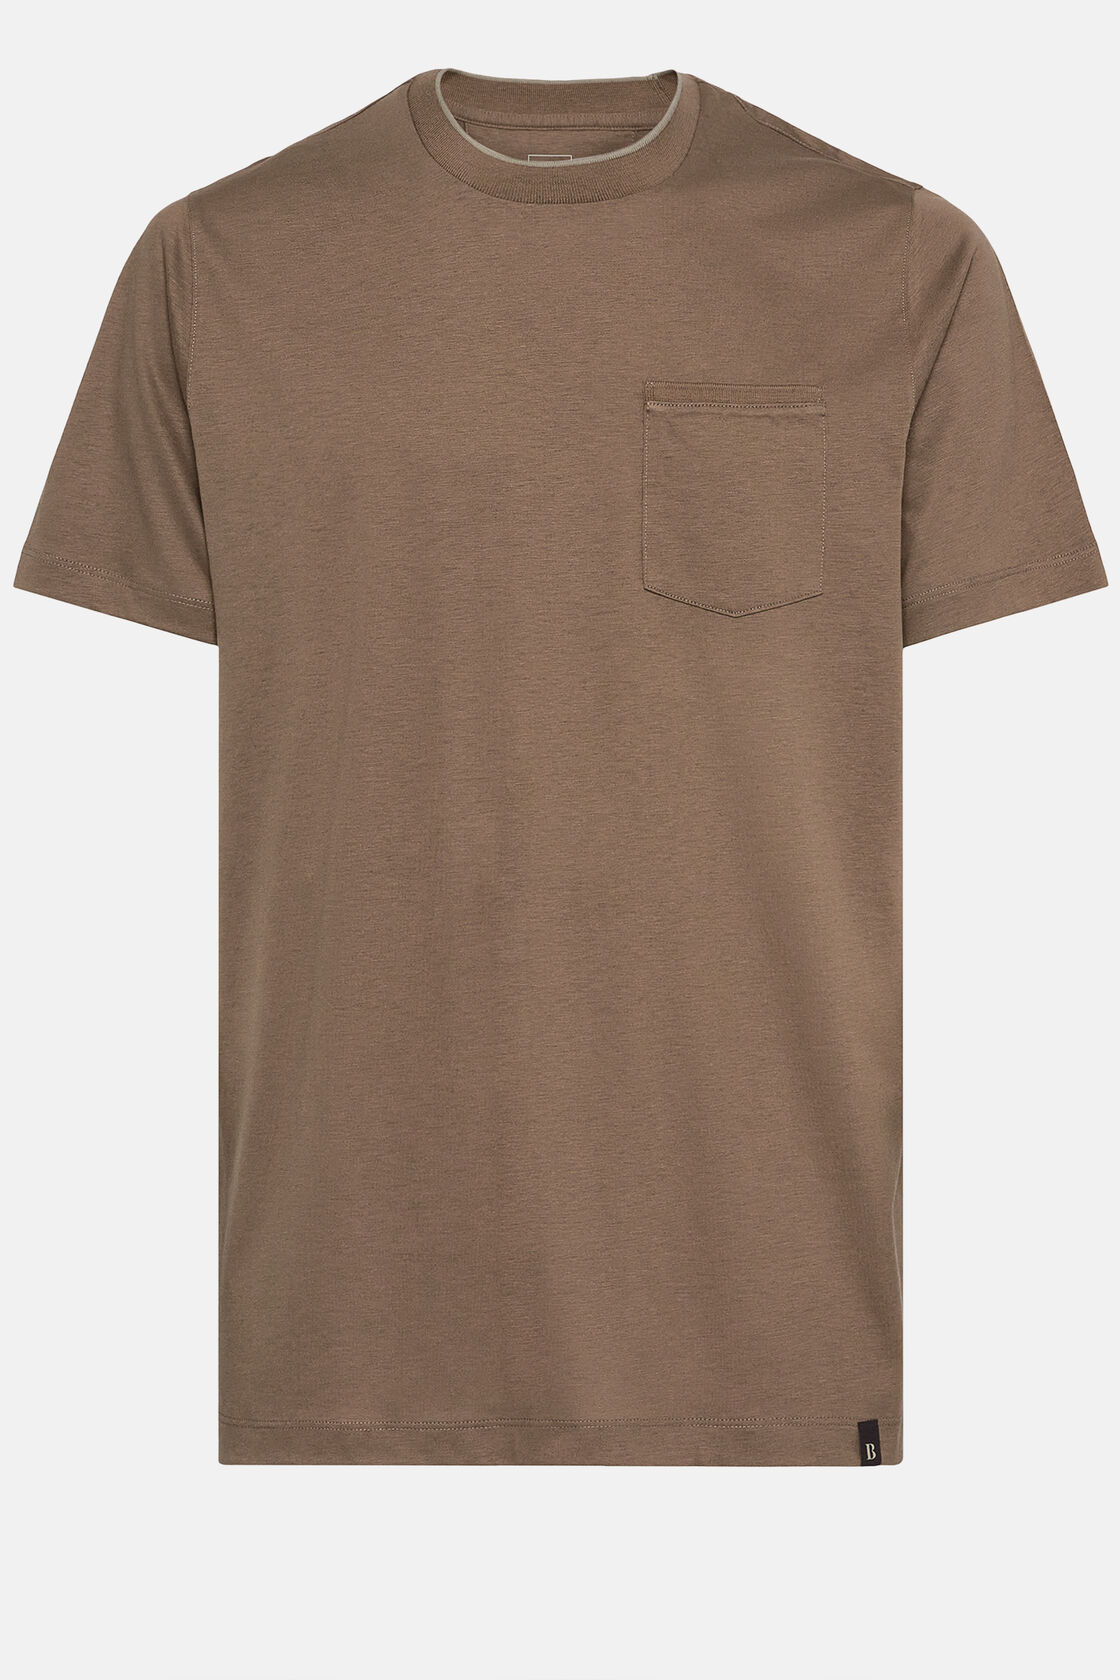 Κοντομάνικο μπλουζάκι από βαμβάκι και ζέρσεϊ tencel, Brown, hi-res